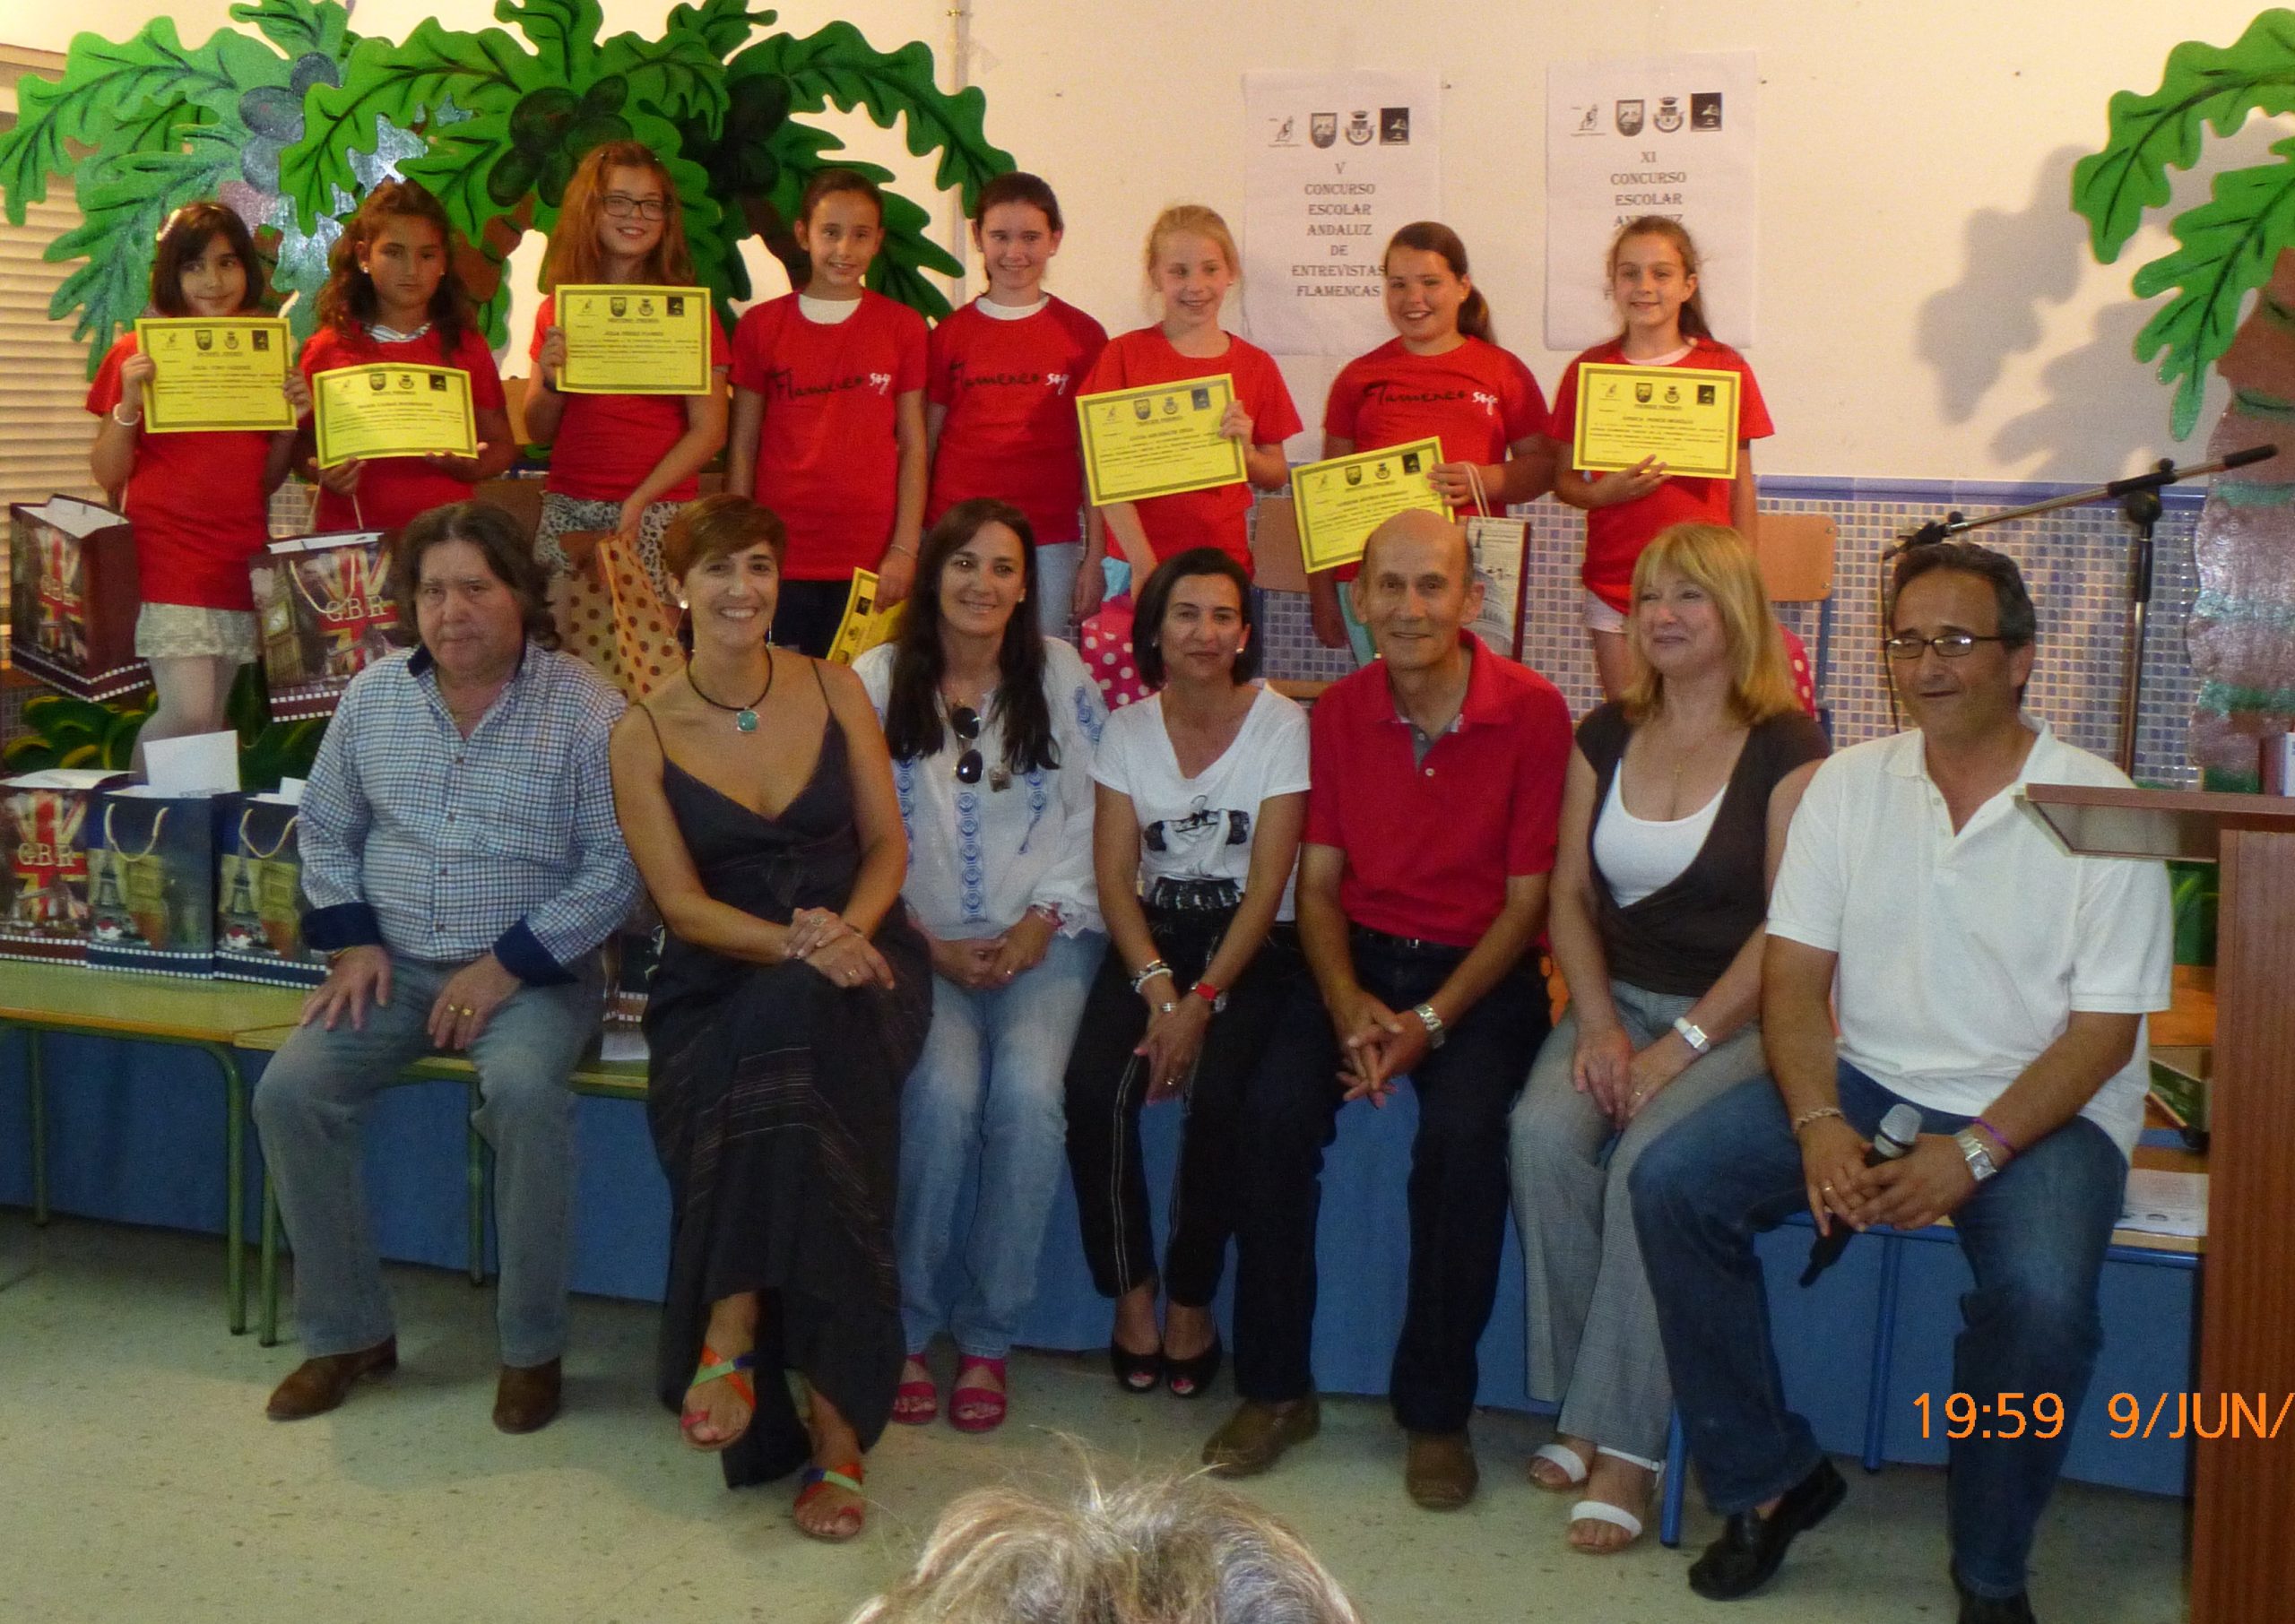 Entrega de premios de los concursos de poesías-entrevistas flamencas en CEIP Mº Juan Apresa. Los niños y niñas con las camisetas rojas con el lema “Flamenco soy”, donadas por el CAF.